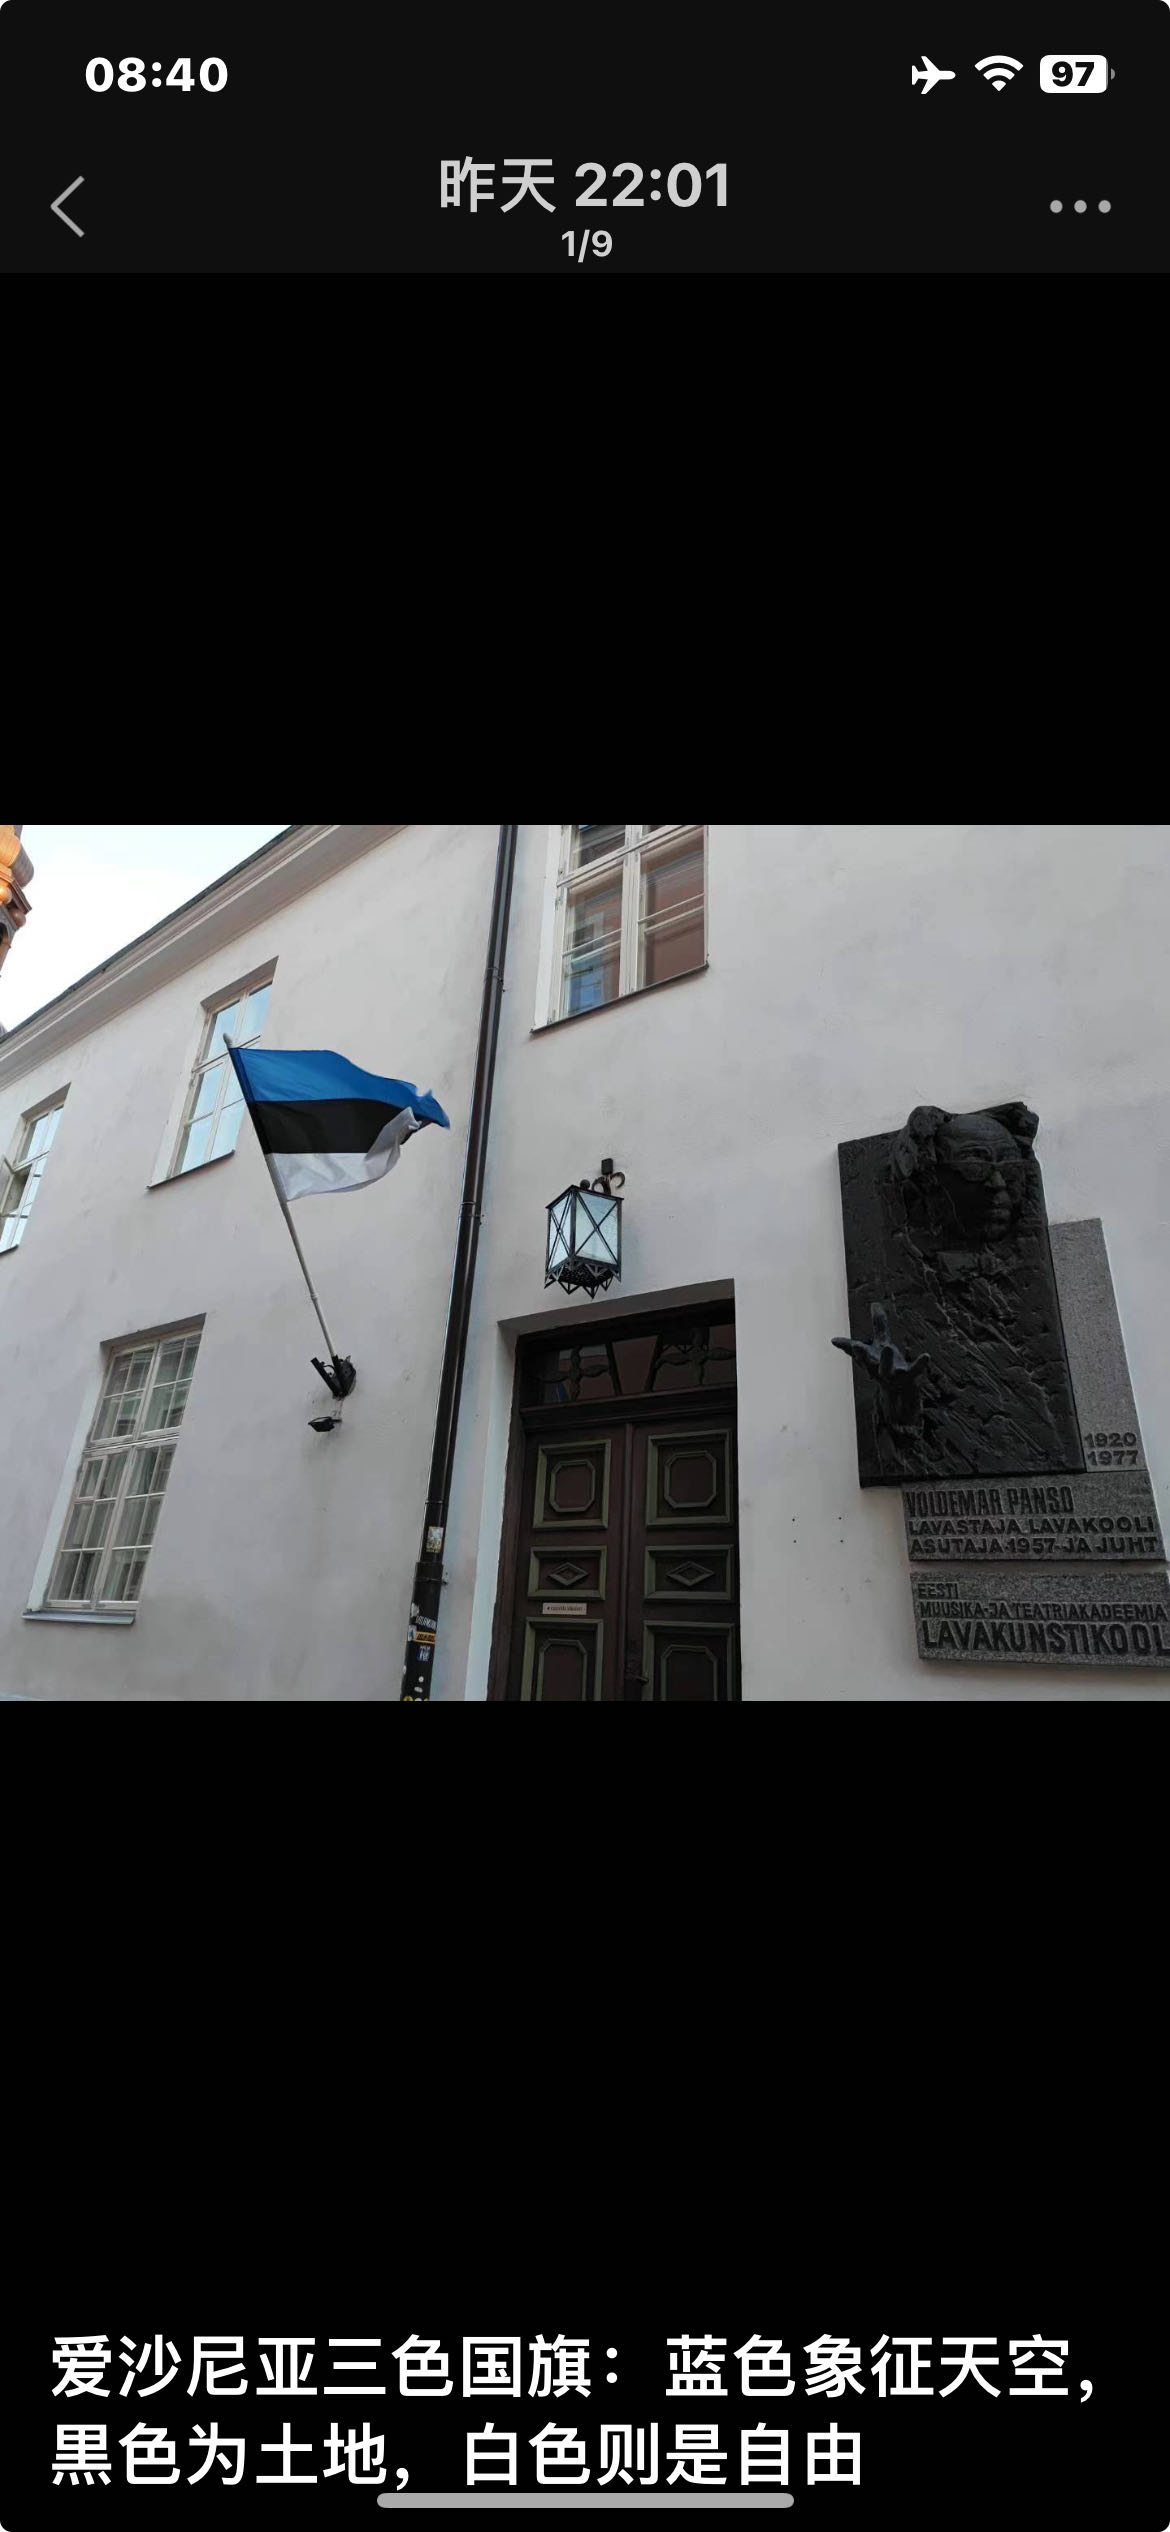 今天我们来到了爱沙尼亚他们的三色国旗：蓝色象征天空，黒色为土地，白色则是自由也很有特色的